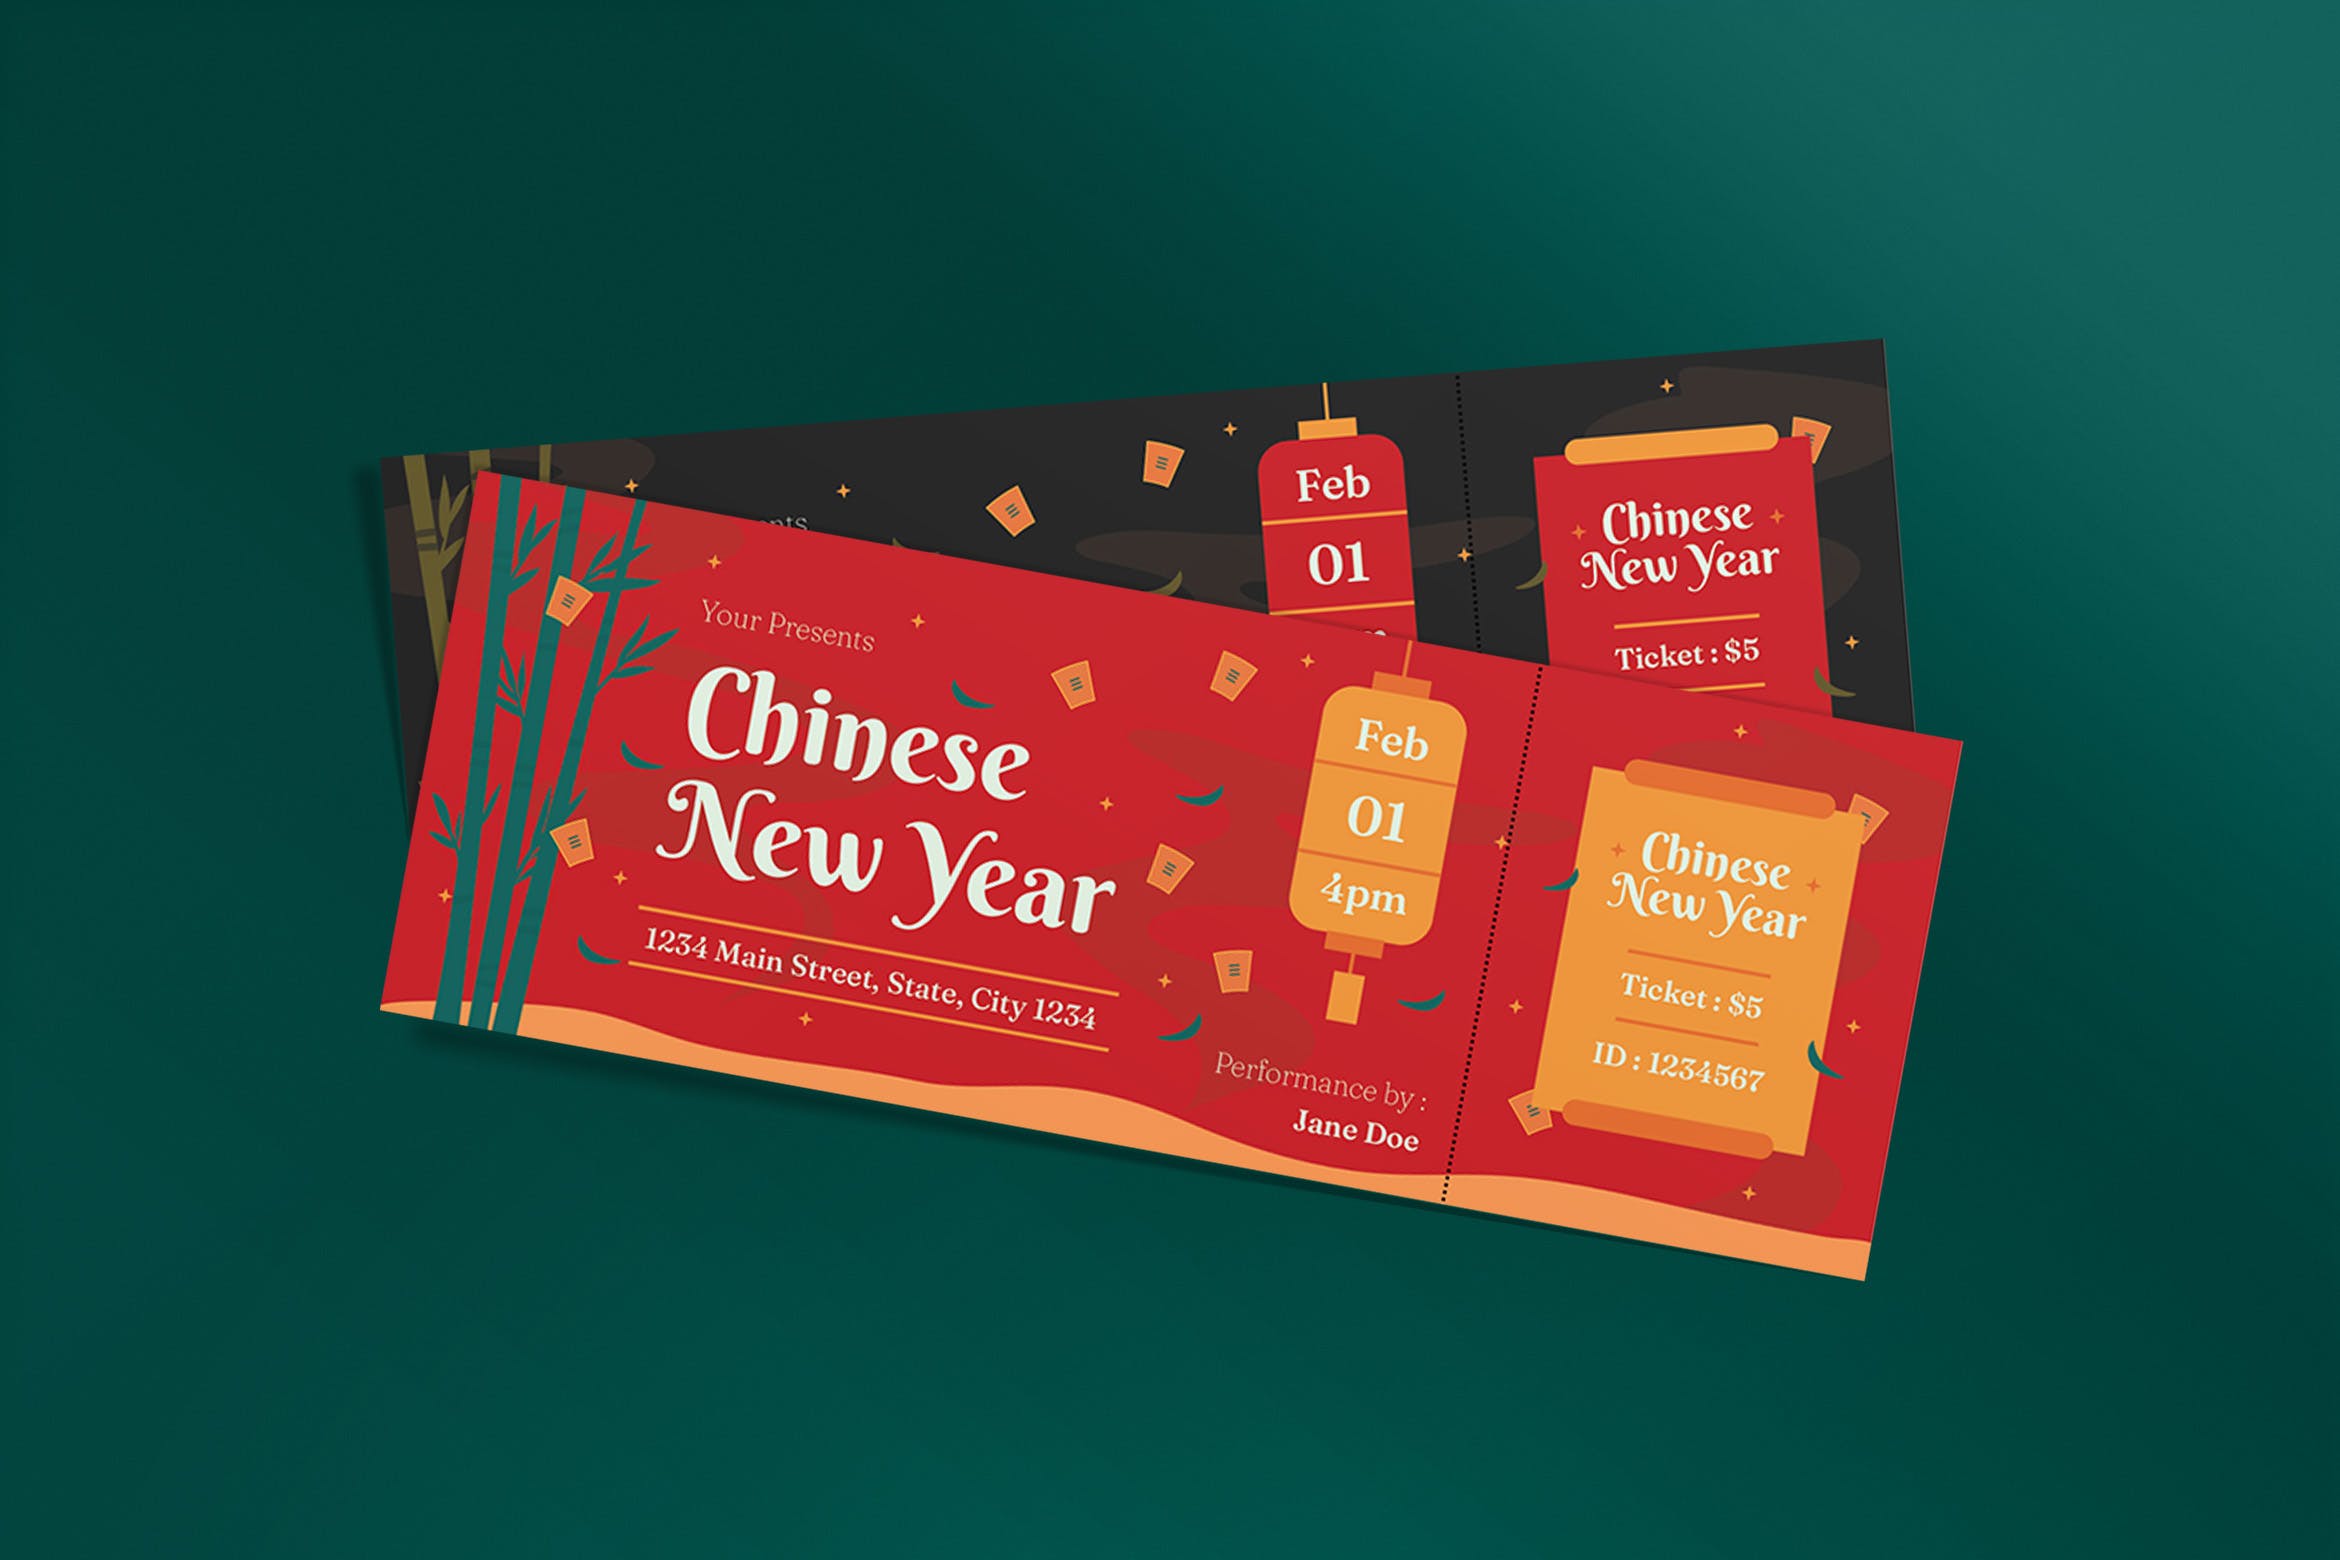 中国新年活动门票设计模板 Chinese New Year Ticket 设计素材 第1张